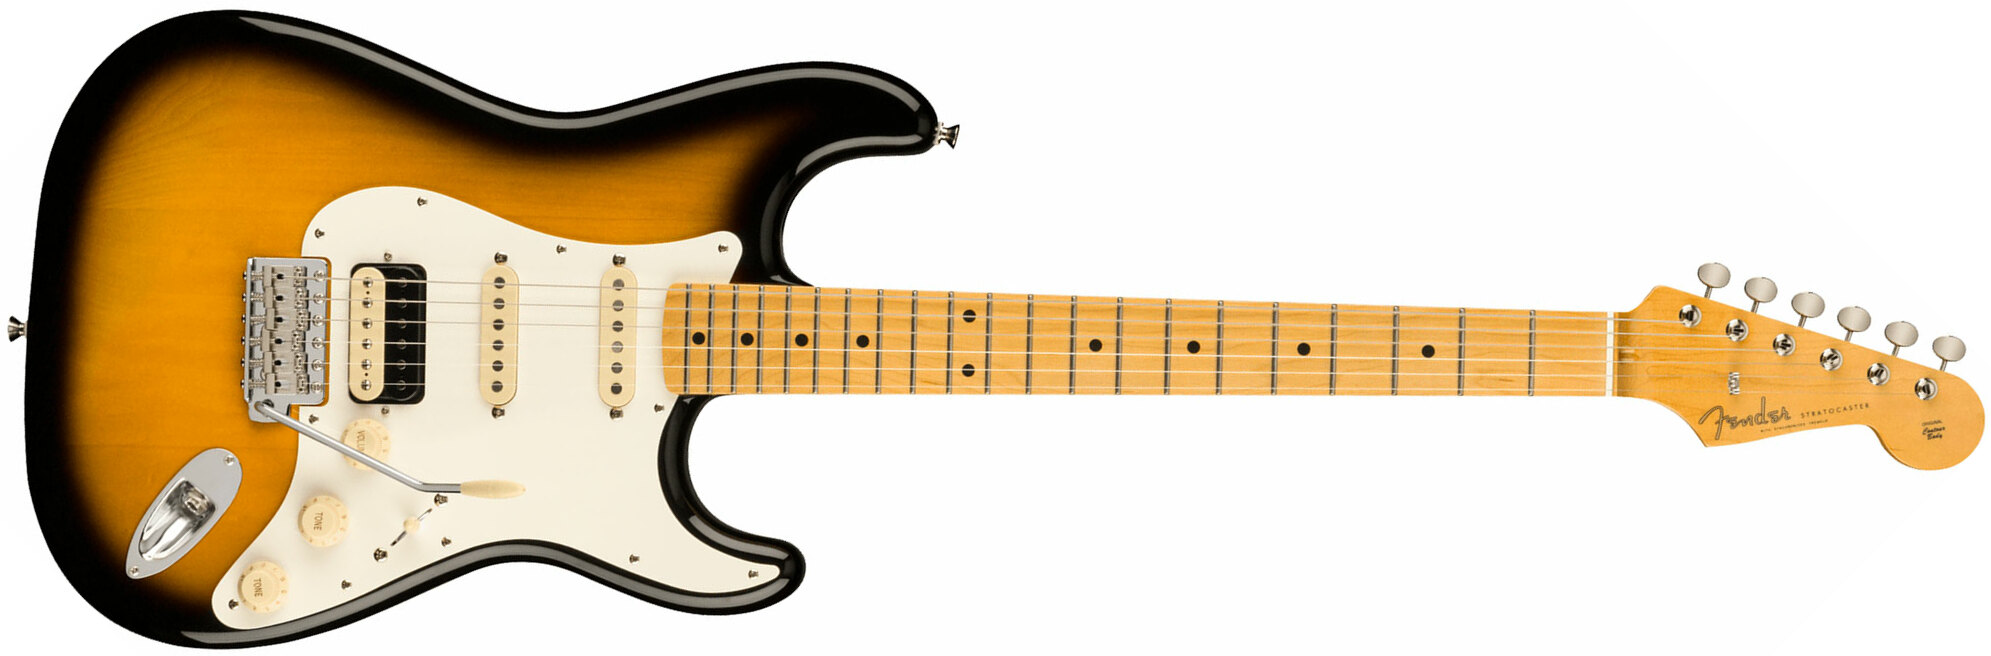 Fender Strat Jv Modified '50s Jap Hss Trem Mn - 2-color Sunburst - Elektrische gitaar in Str-vorm - Main picture